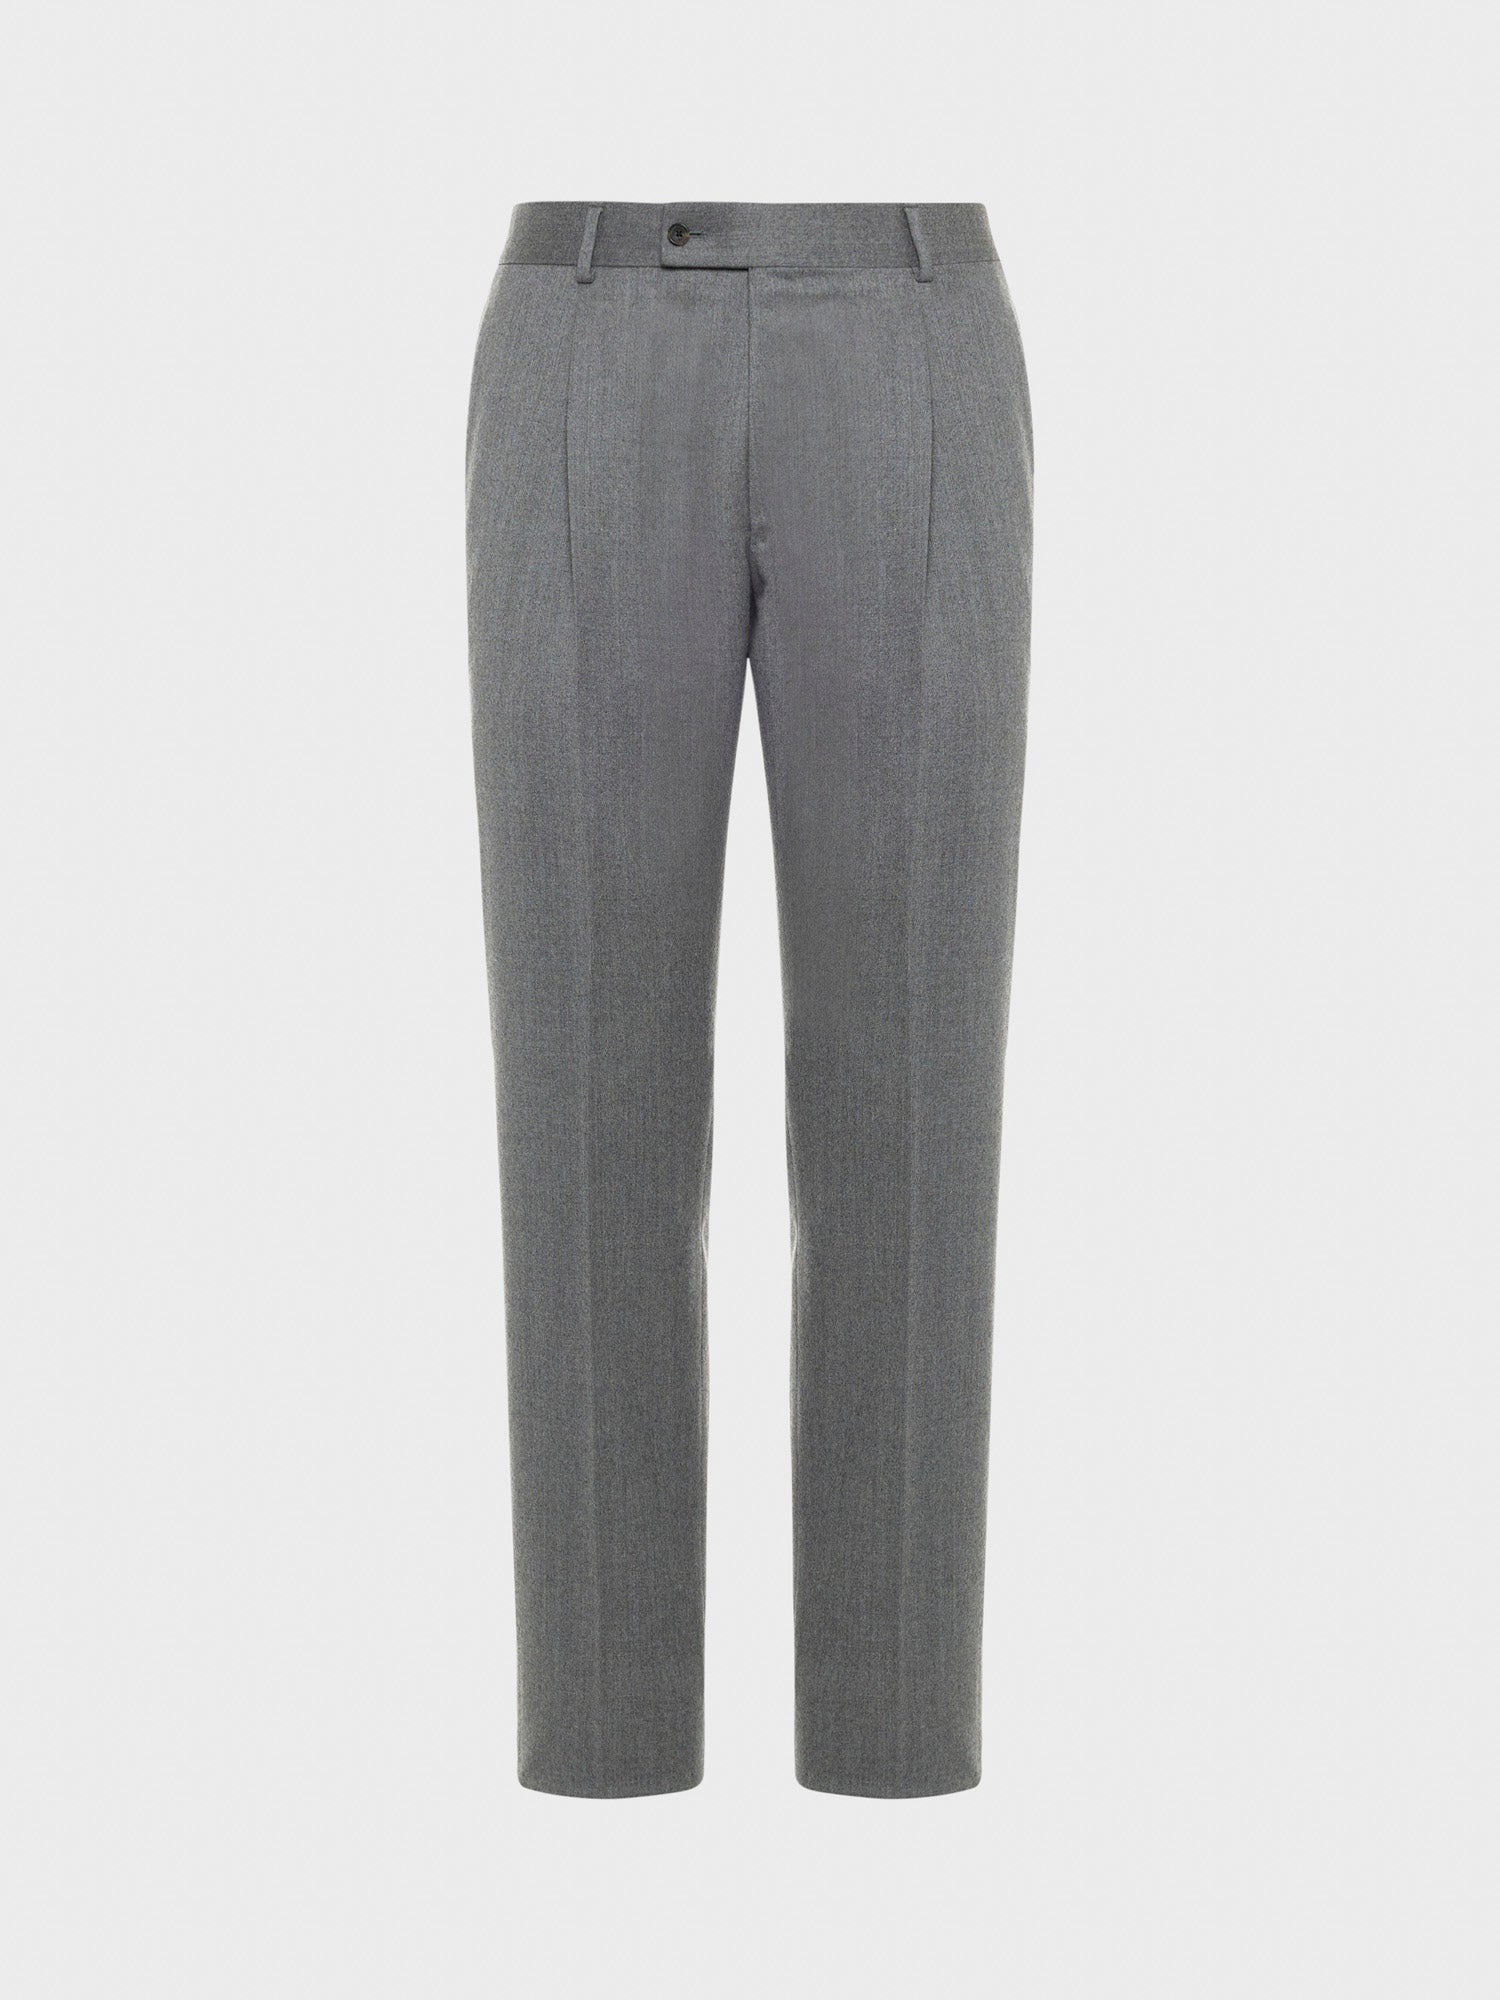 Caruso Menswear Abbigliamento Uomo Pantalone in lana "Nuage" e seta grigio still